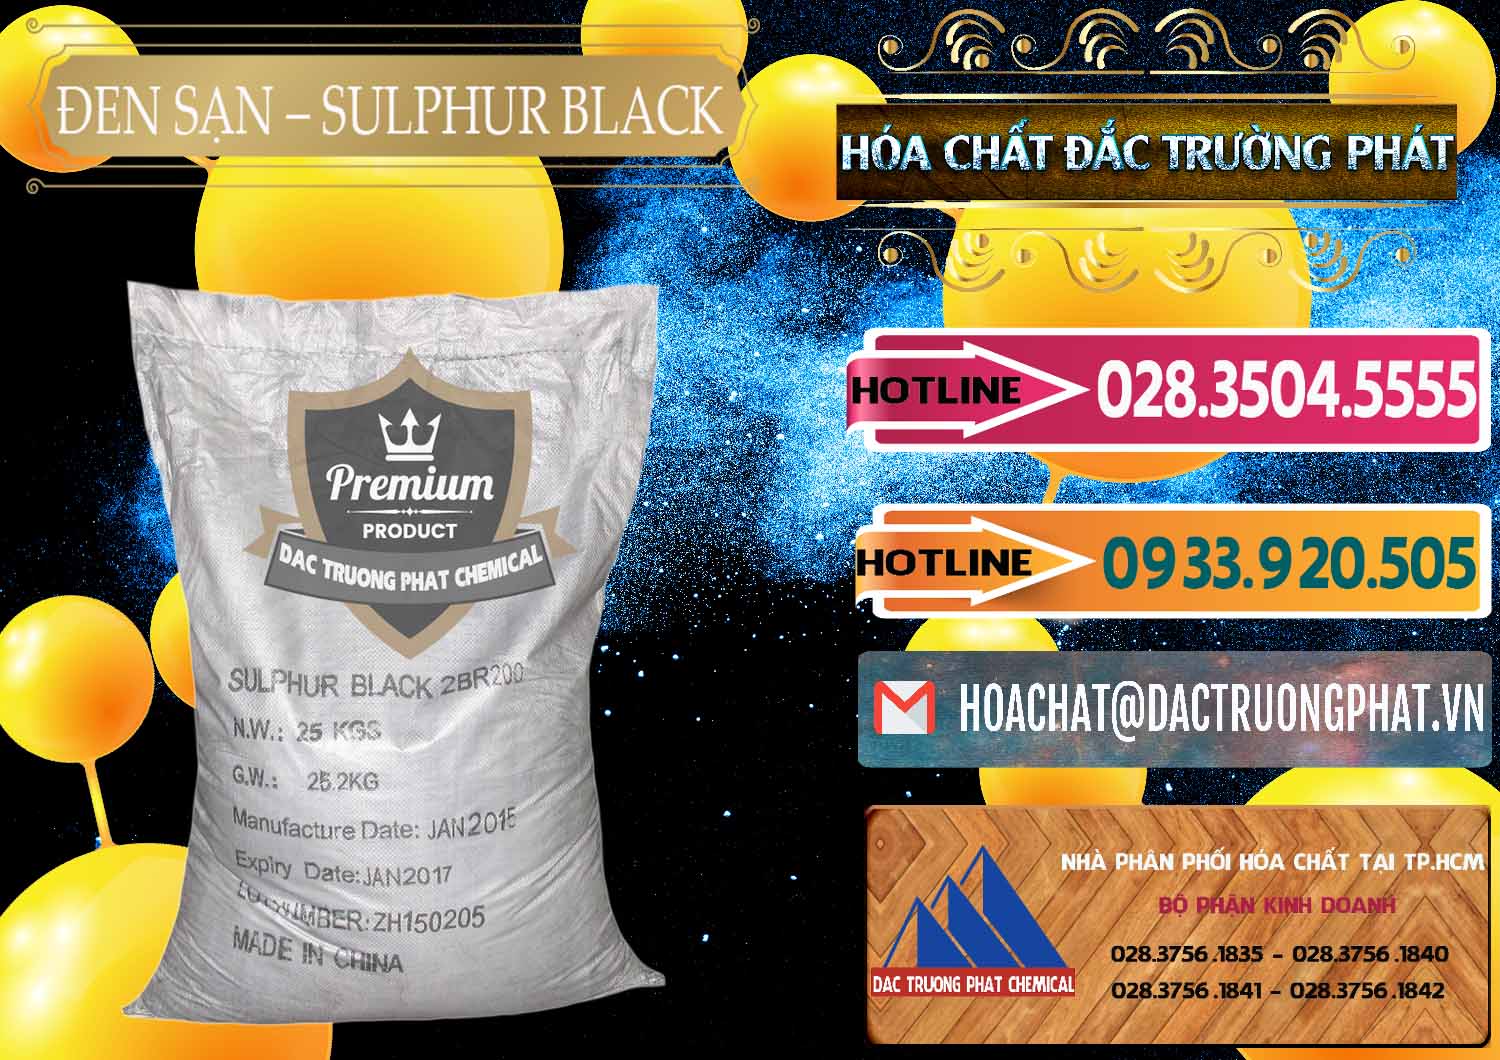 Đơn vị chuyên bán - phân phối Đen Sạn – Sulphur Black Trung Quốc China - 0062 - Chuyên phân phối _ bán hóa chất tại TP.HCM - dactruongphat.vn